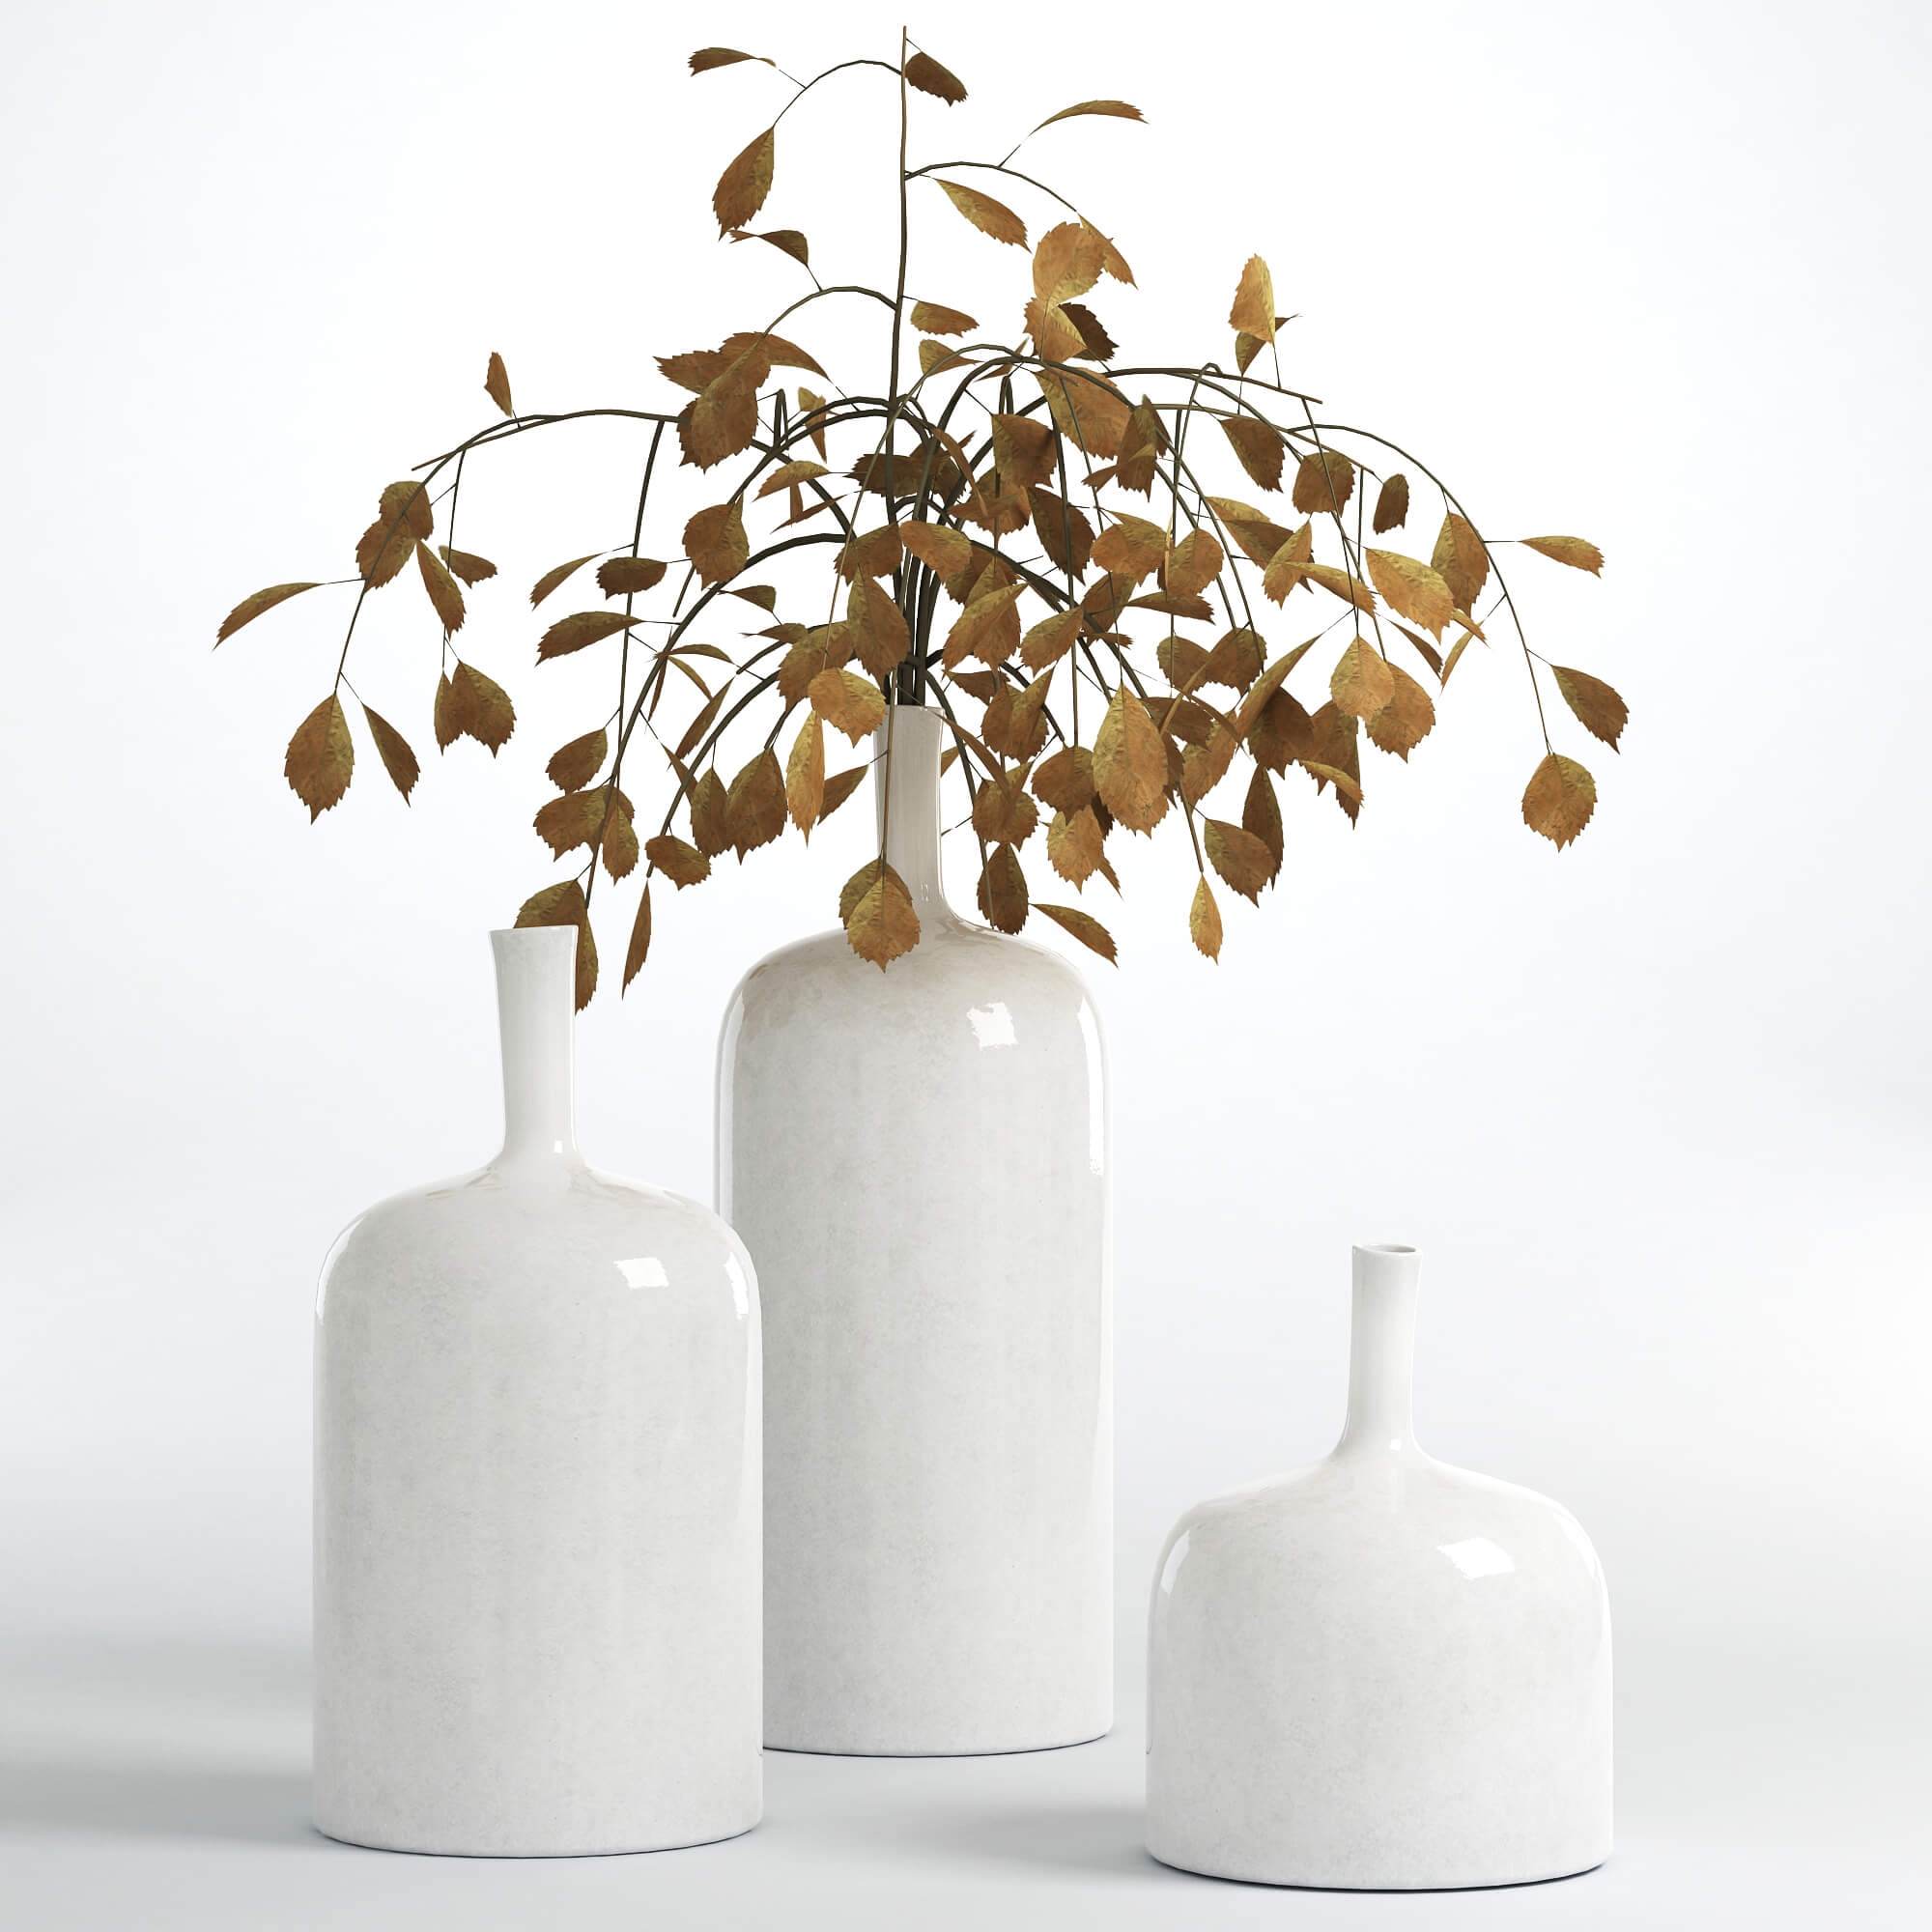 plant vase 3d model free download